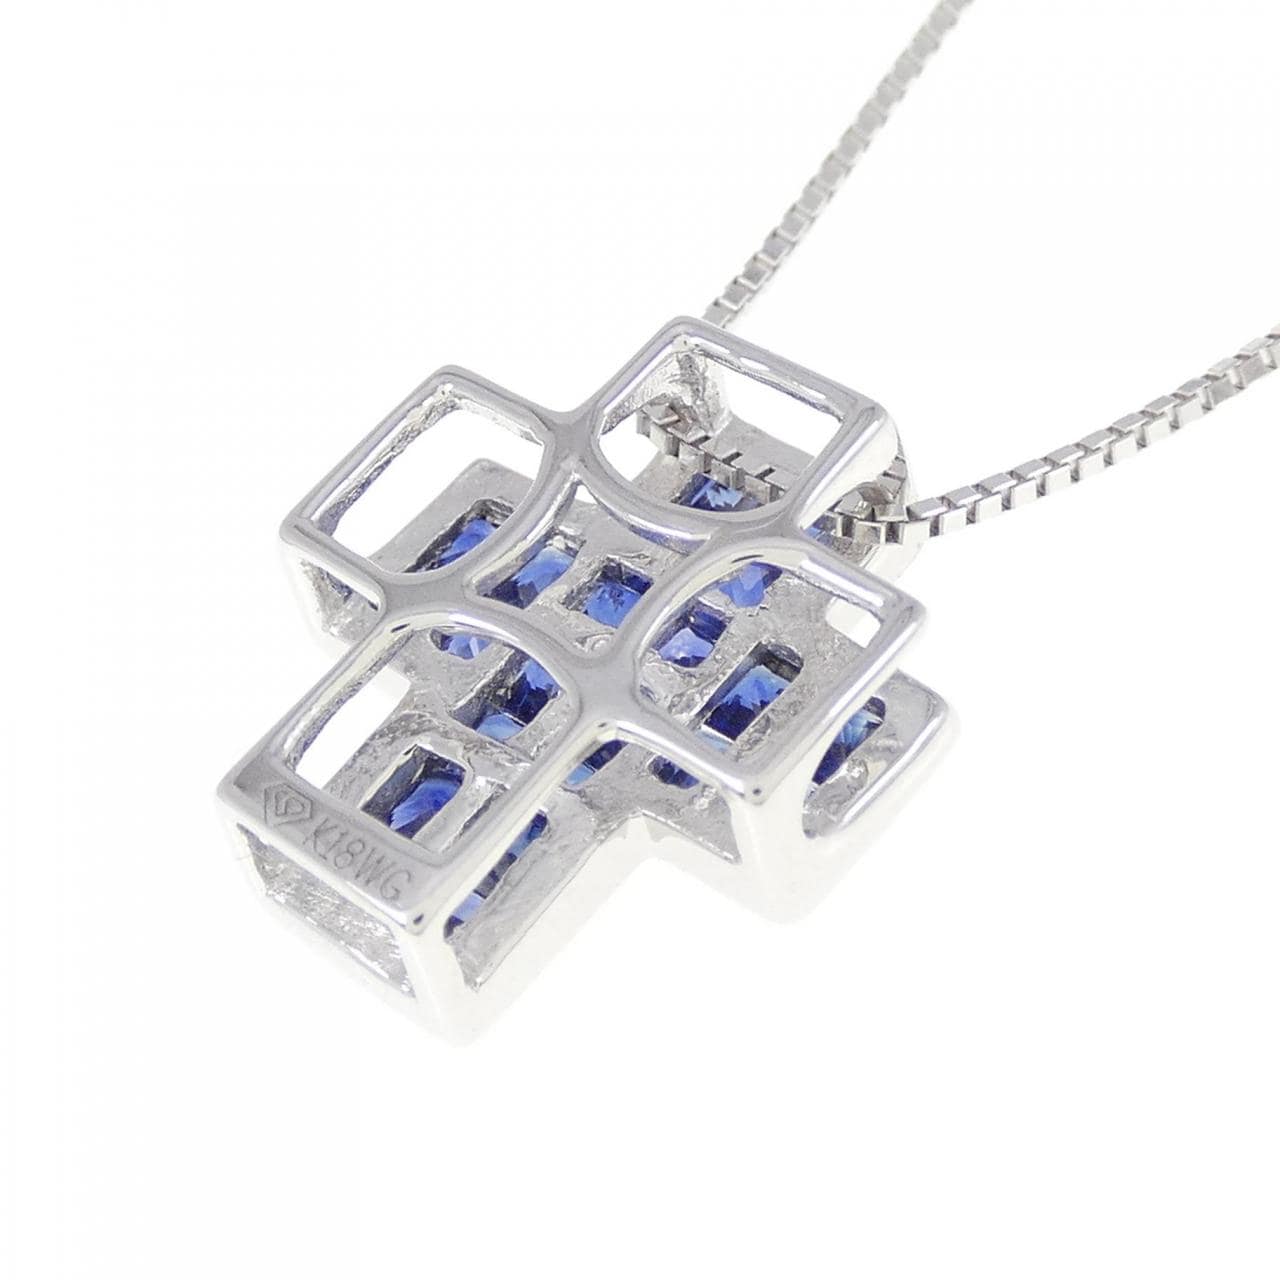 K18WG cross sapphire necklace